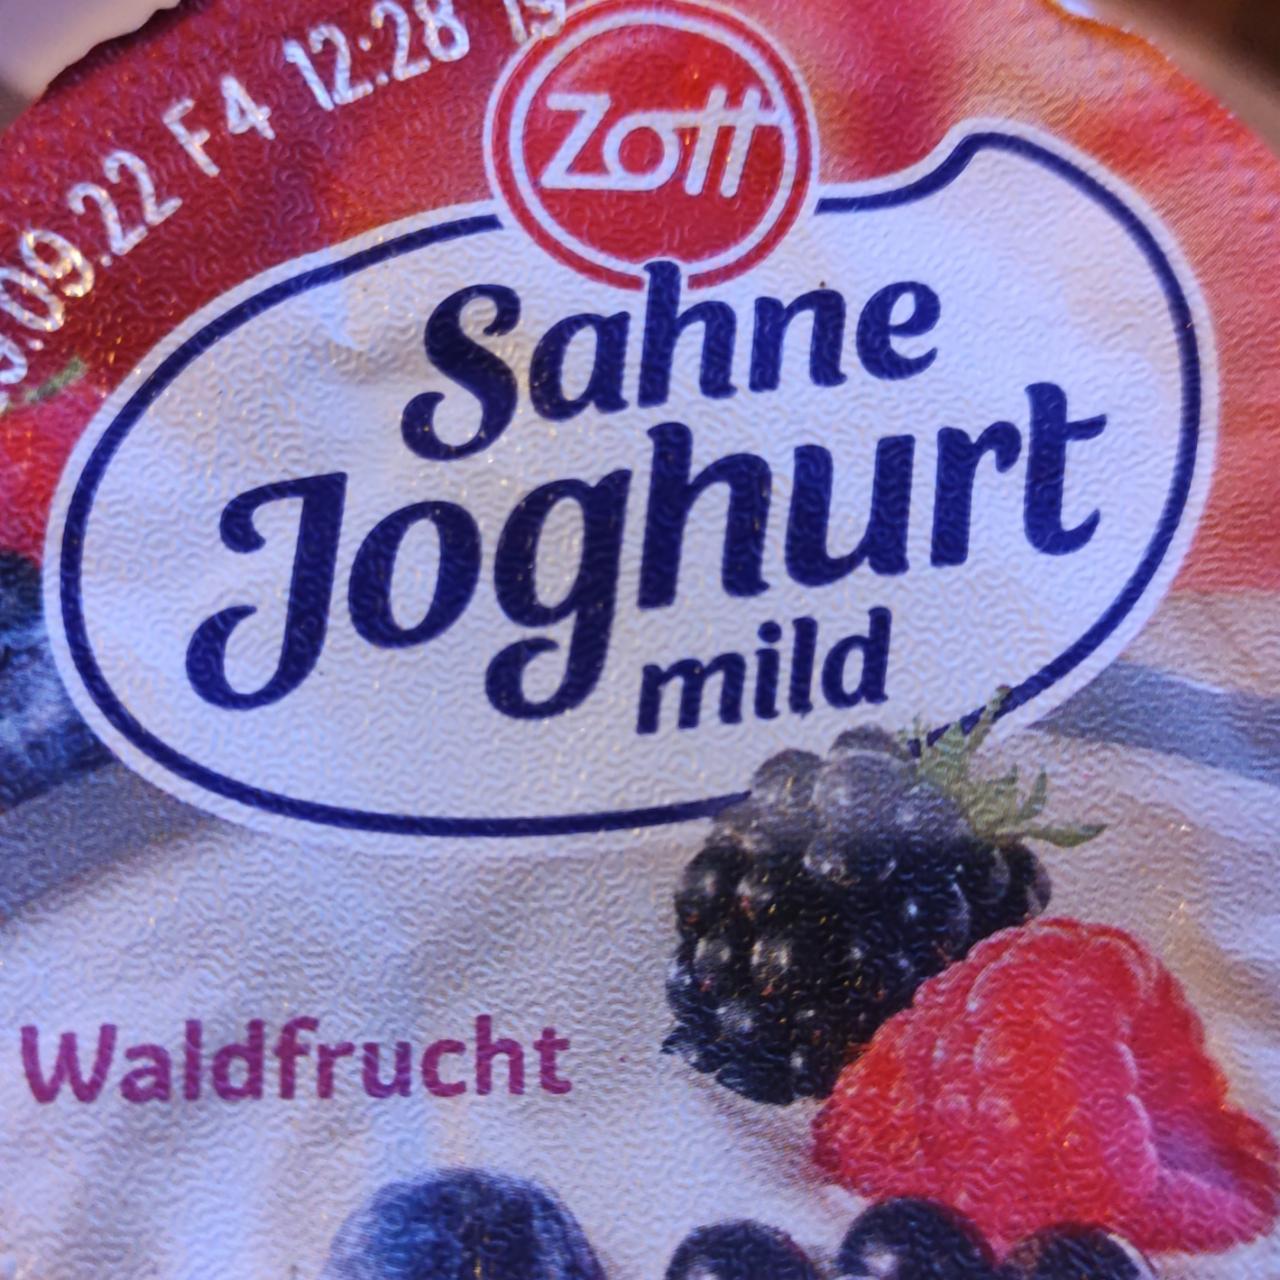 Fotografie - Zott Sahne Joghurt mild Waldfrucht